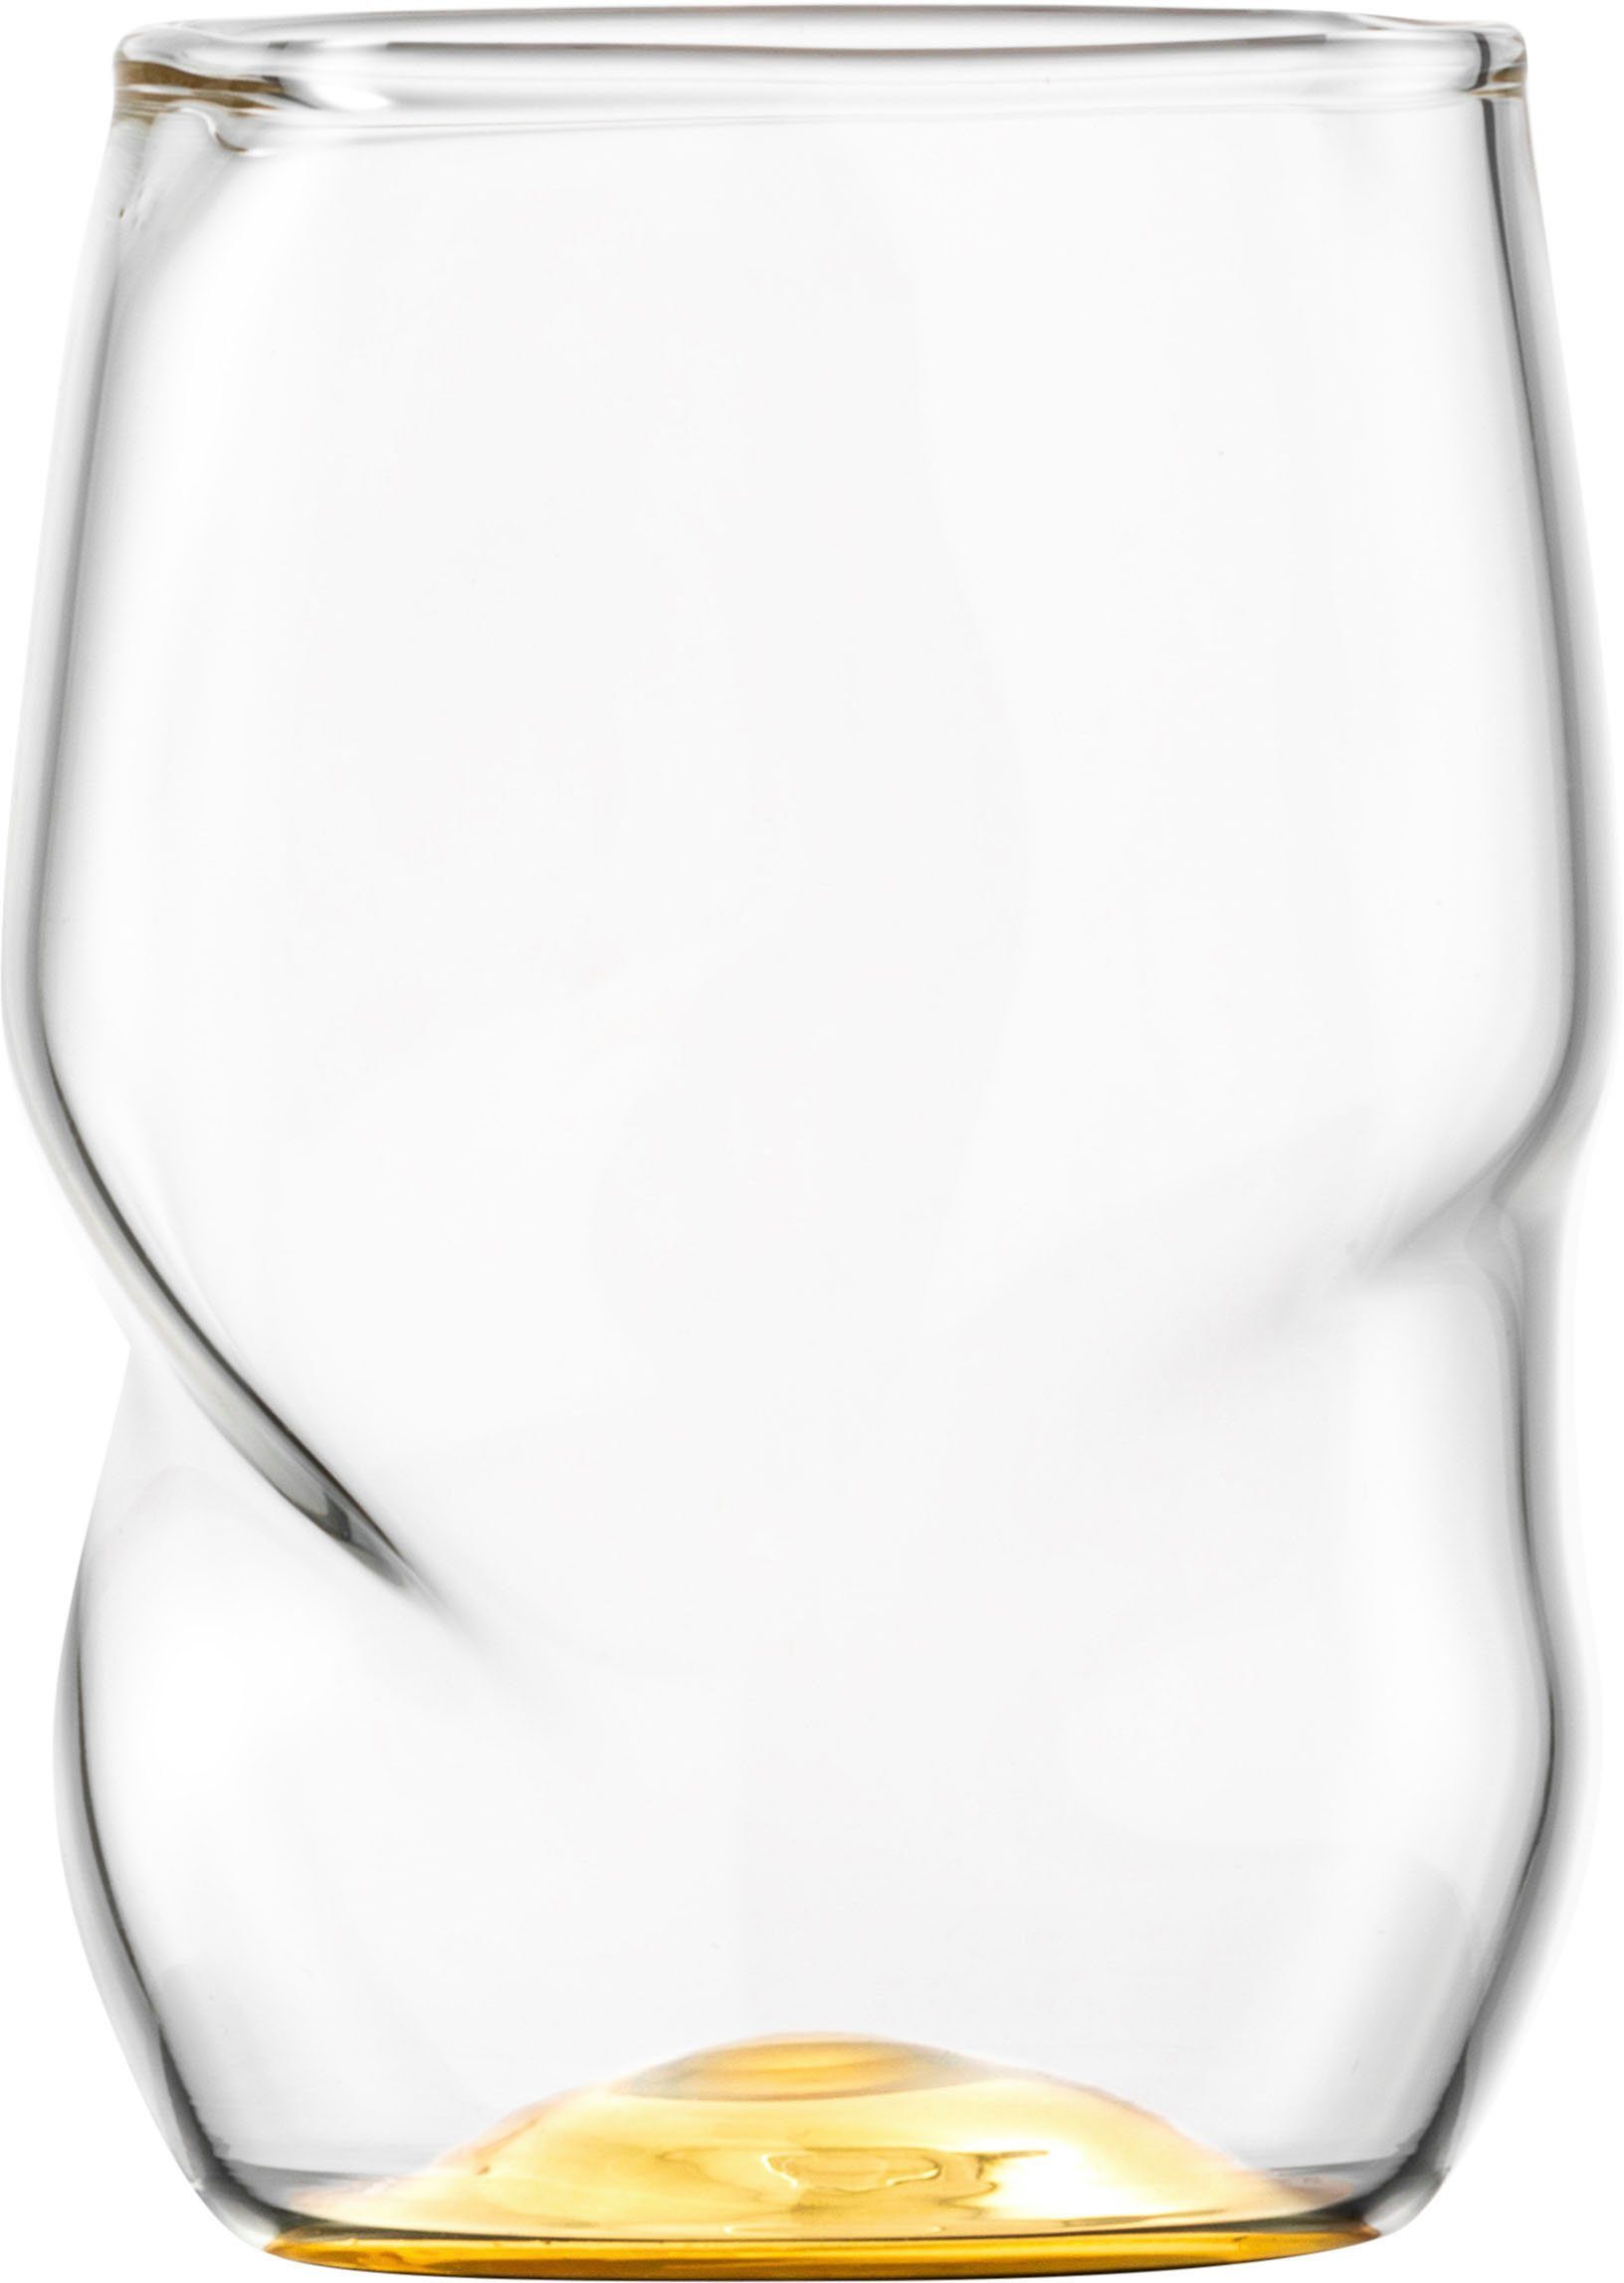 Eisch Höhe ml, 300ml. Becher 10cm von Glases des veredelt UNIK, das Allroundbecher, ca. Echtgold, Bei 2-teilig, Volumen beträgt 300 mit einer Borosilikatglas,